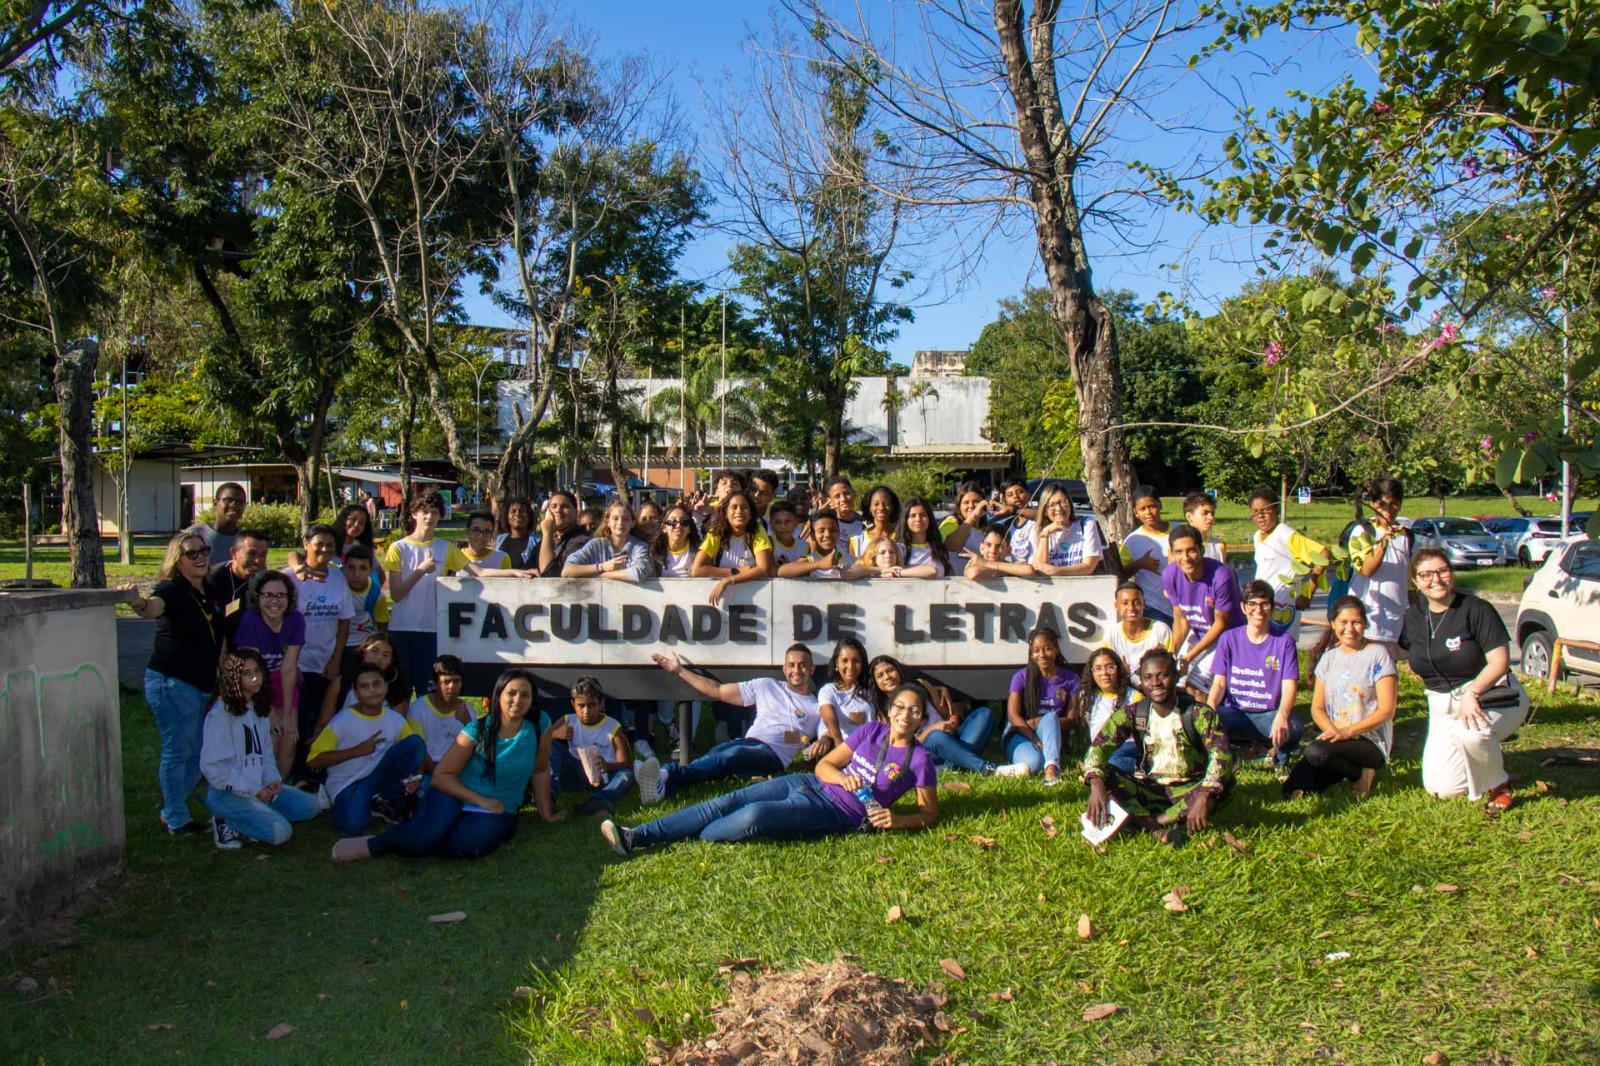 Fotografia ao ar livre em que dezenas de estudantes estão em volta de uma placa com o texto: Faculdade de Letras.